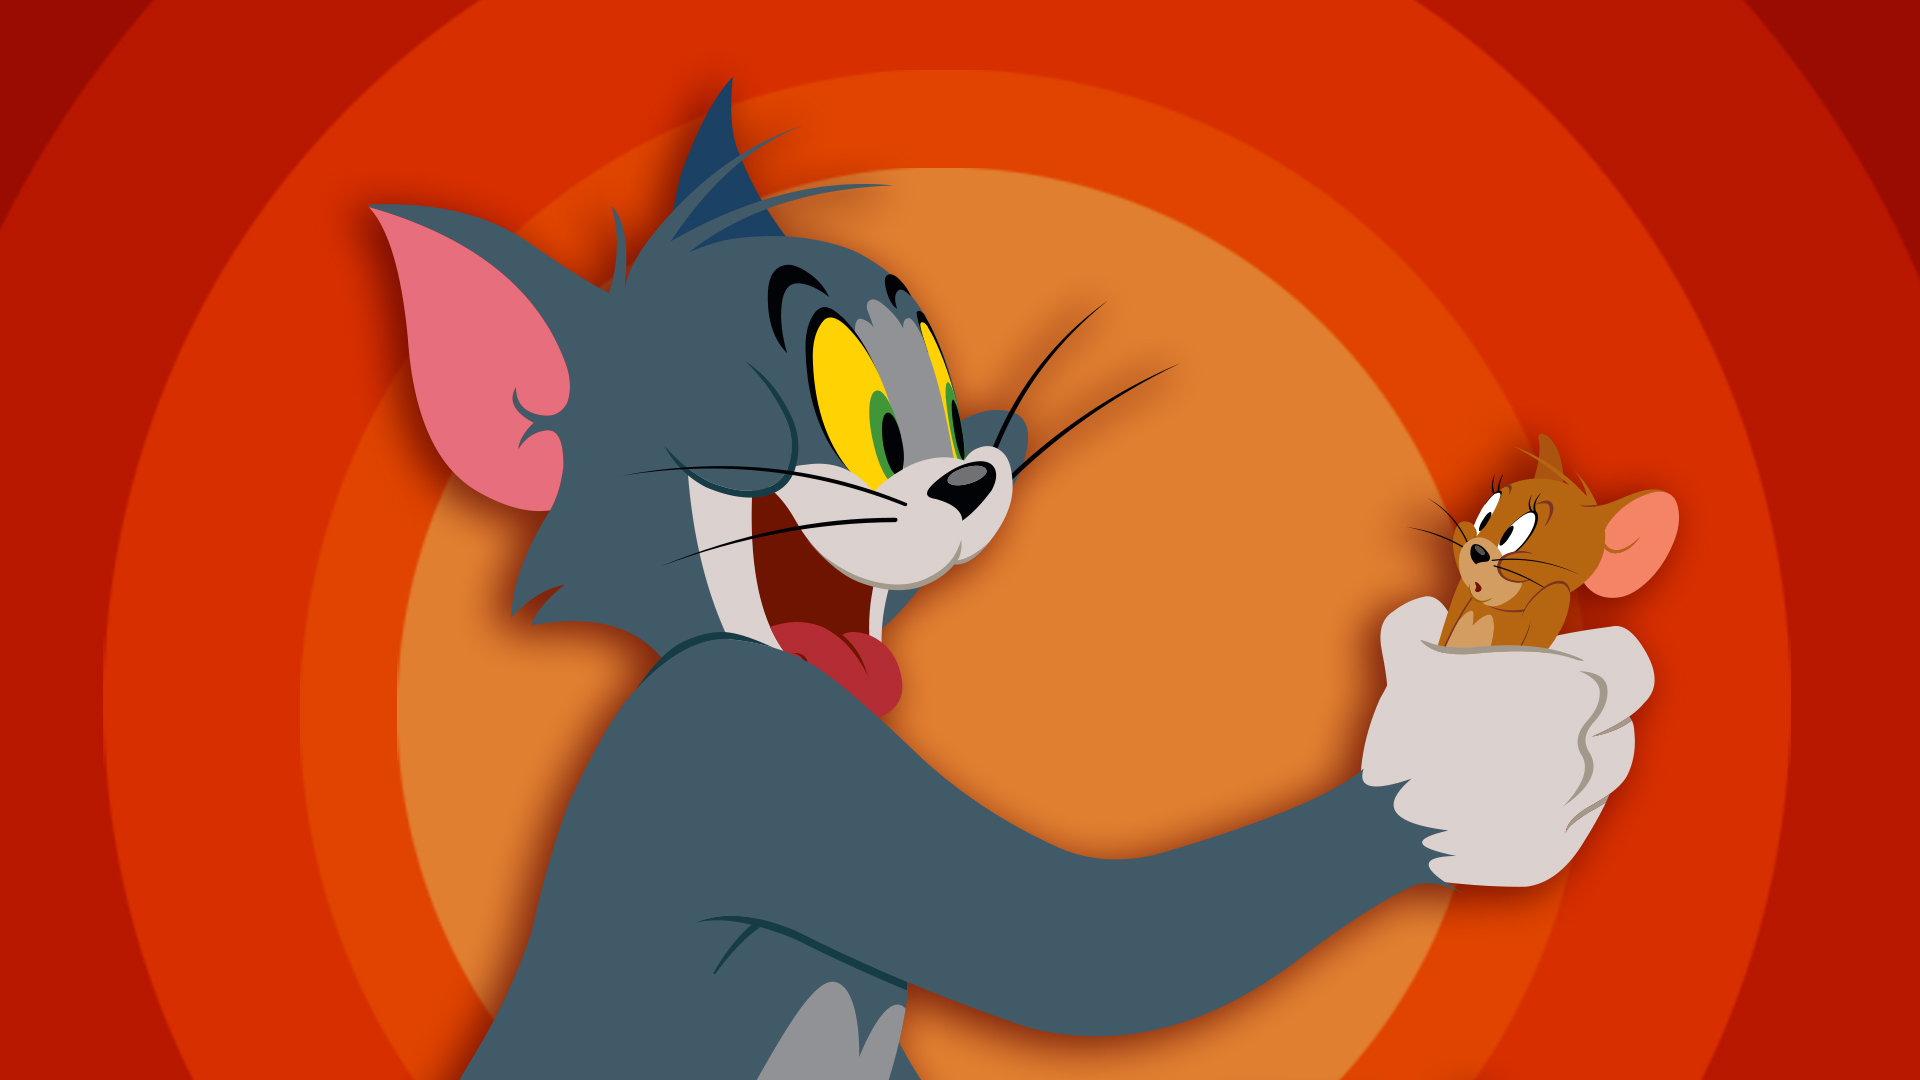 Những chú chuột đáng yêu Tom và Jerry đã trở lại với những tình huống bất ngờ và hài hước của mình. Cùng xem bộ đôi này thi đấu, chọc ghẹo nhau và giải quyết những rắc rối trong cuộc sống hàng ngày của chúng. Họ sẽ mang đến cho bạn những giây phút giải trí thú vị nhất.